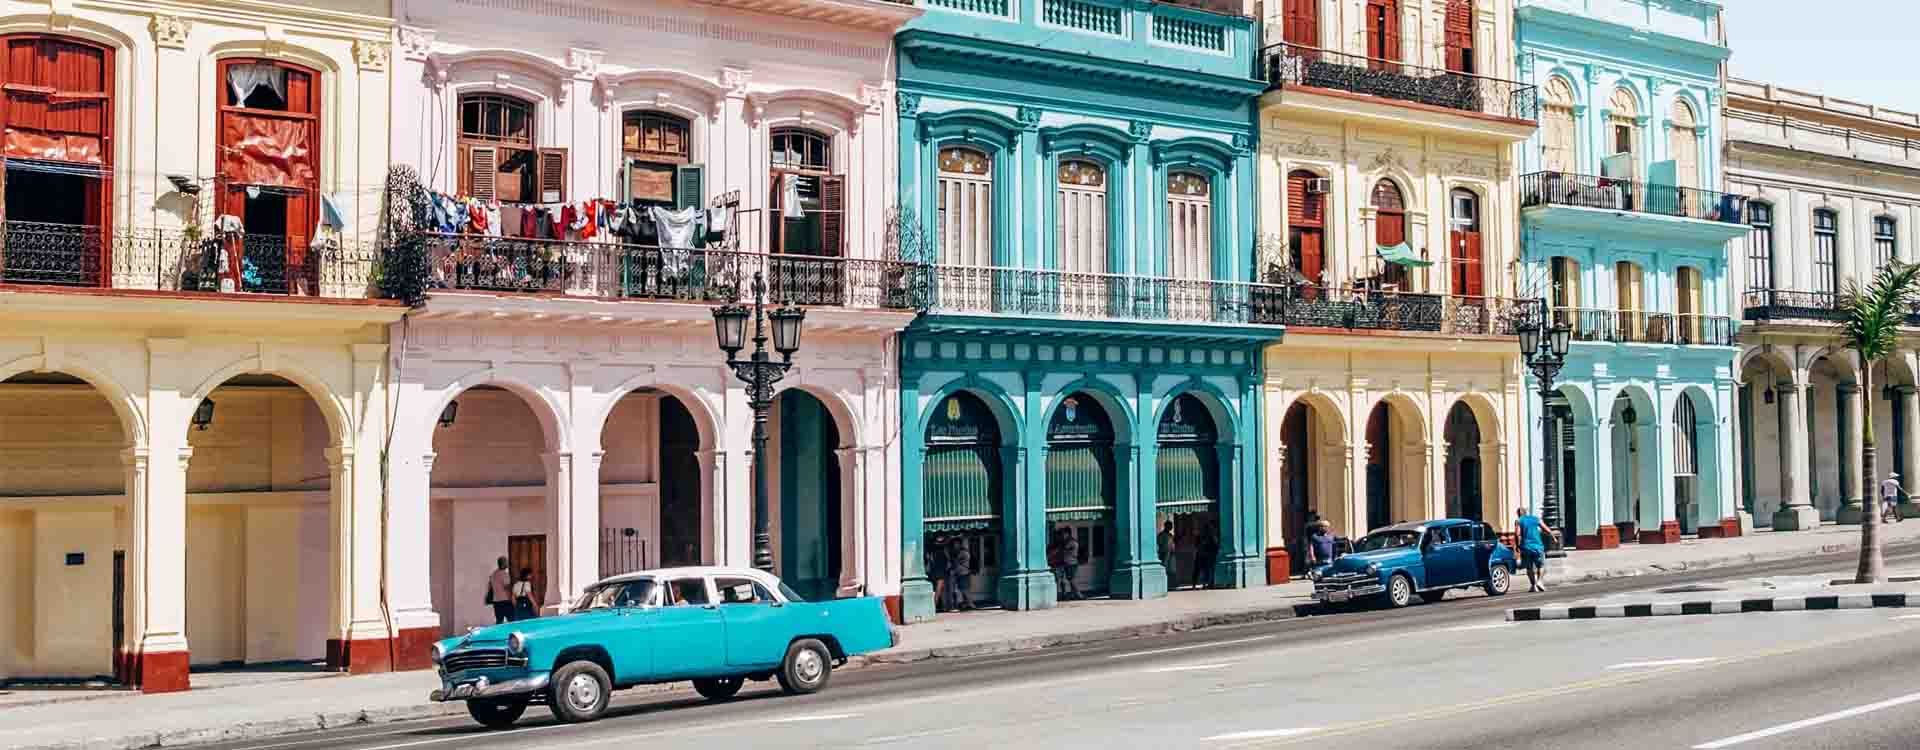 Kubánska ulica: starodávne autá a farebné priečelia historických budov